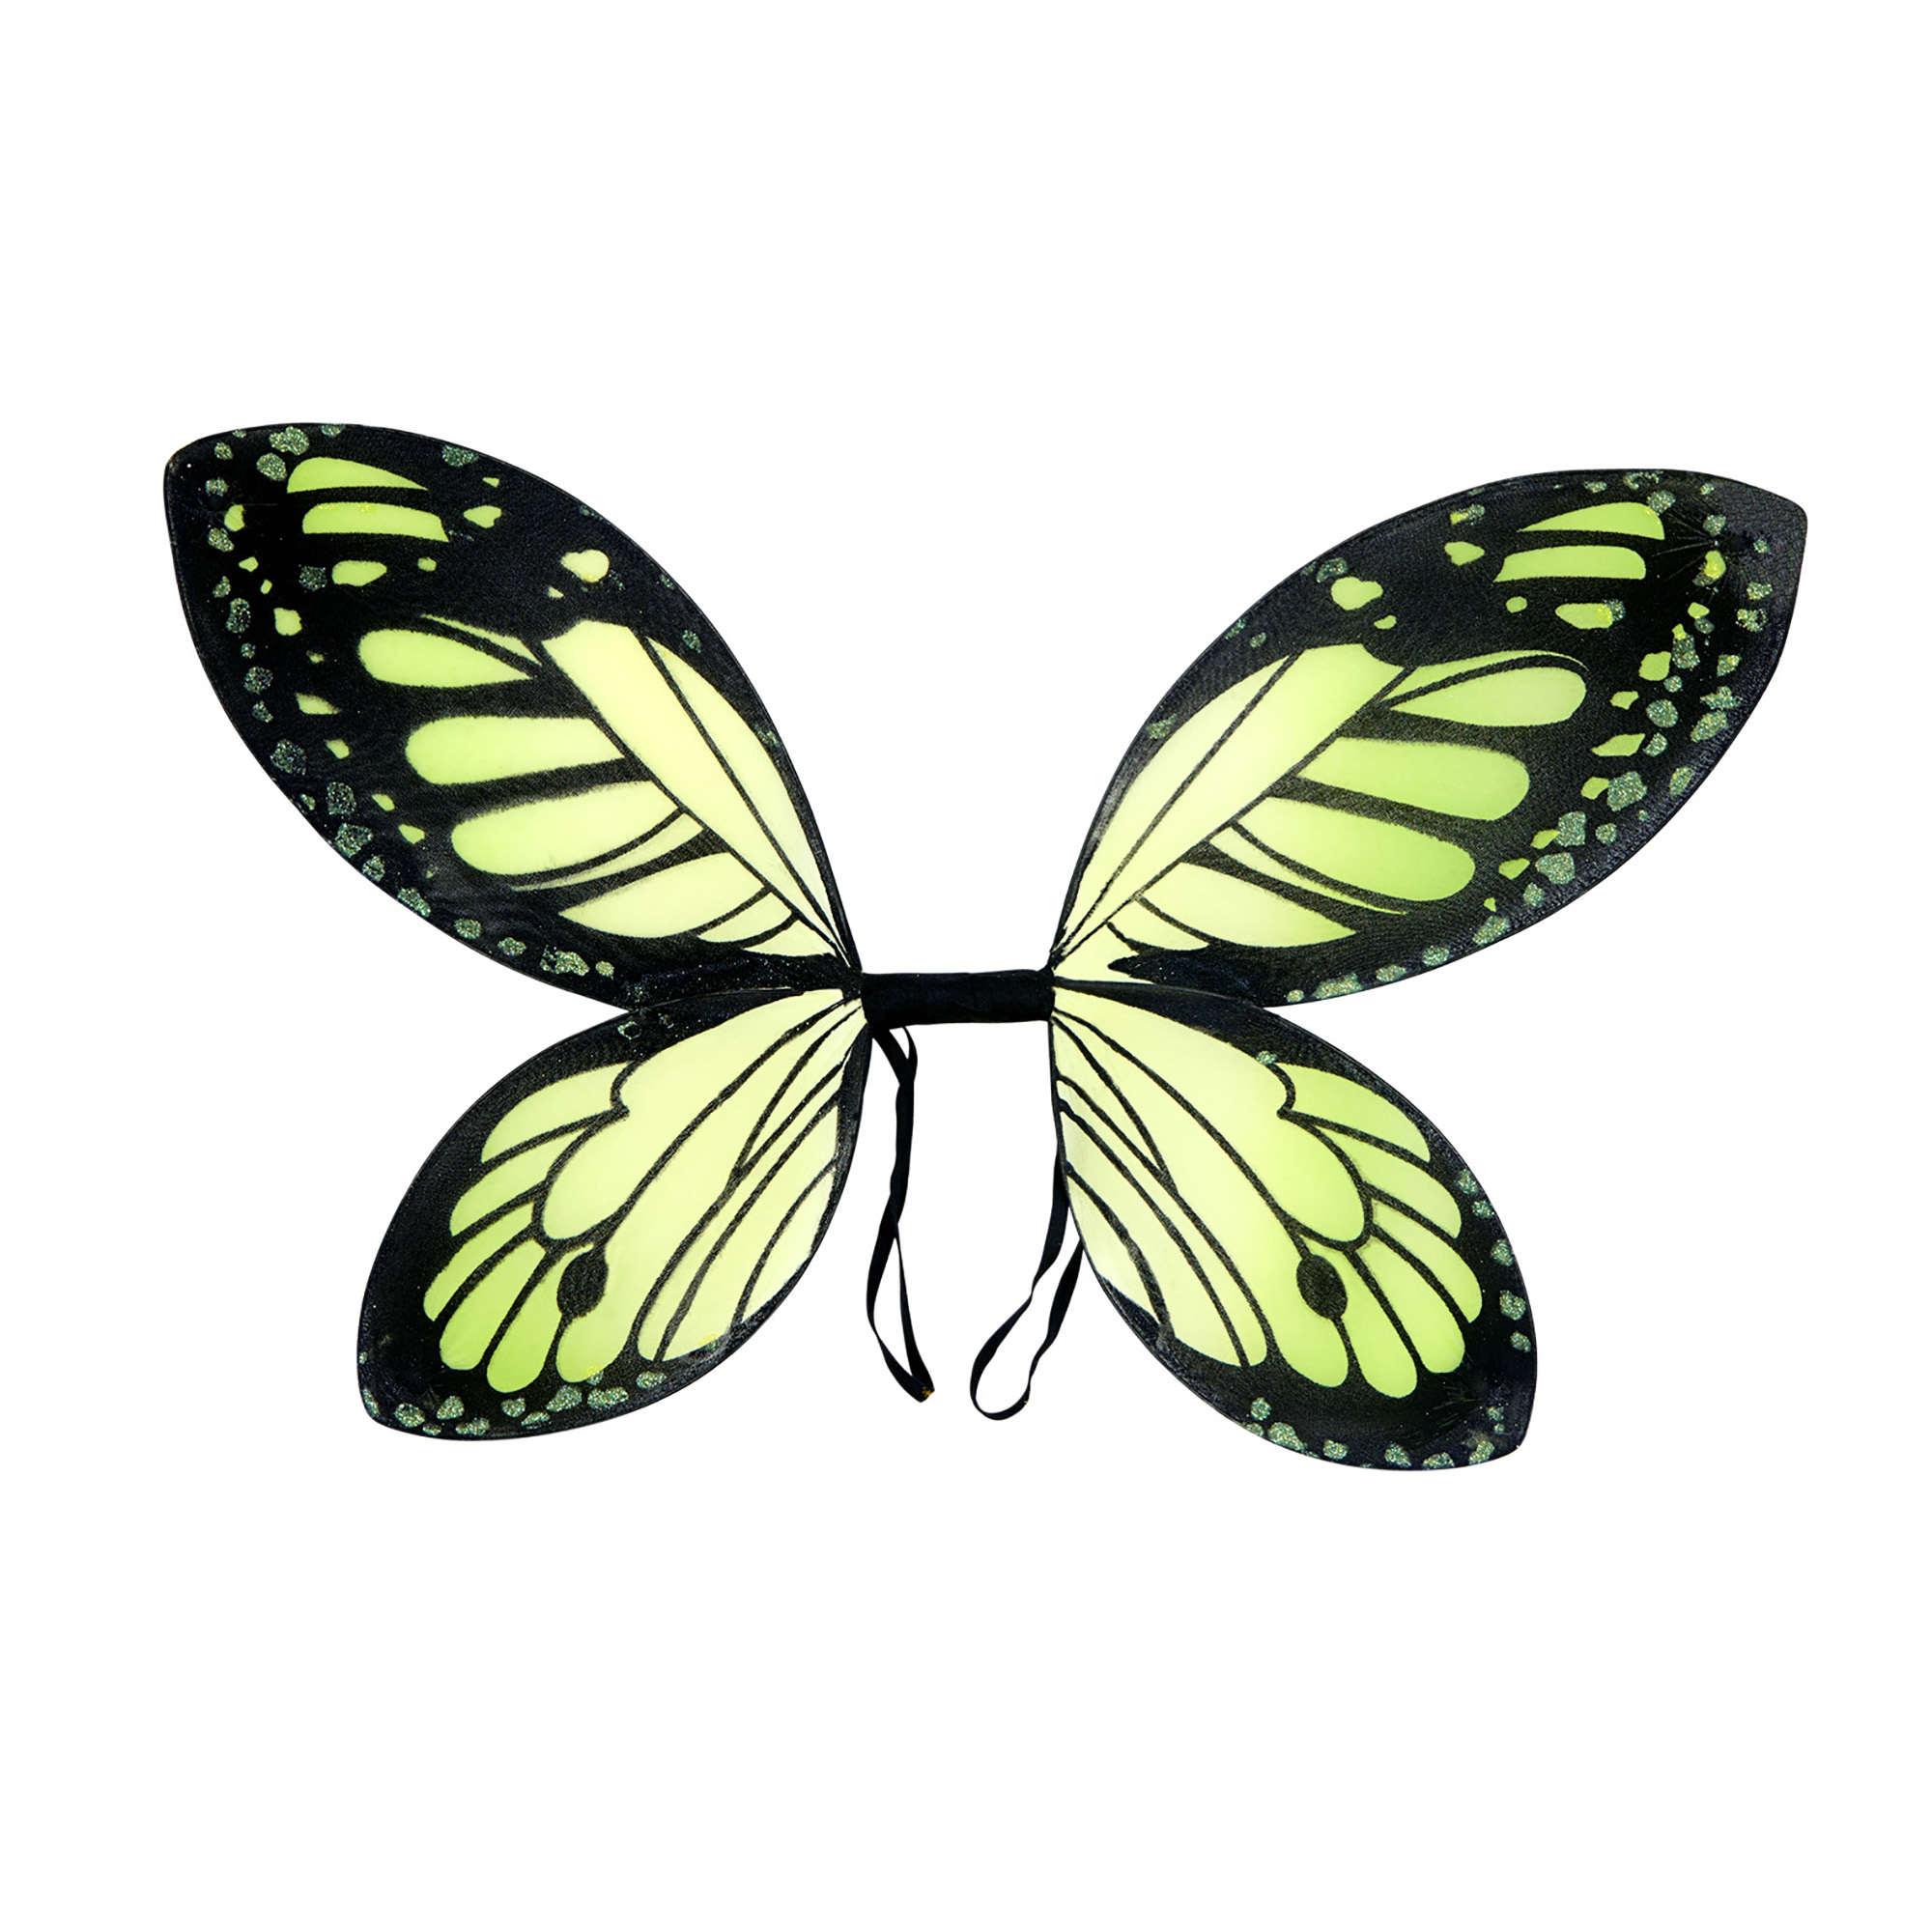 fladderende vlinder vleugels zwart groen kind.